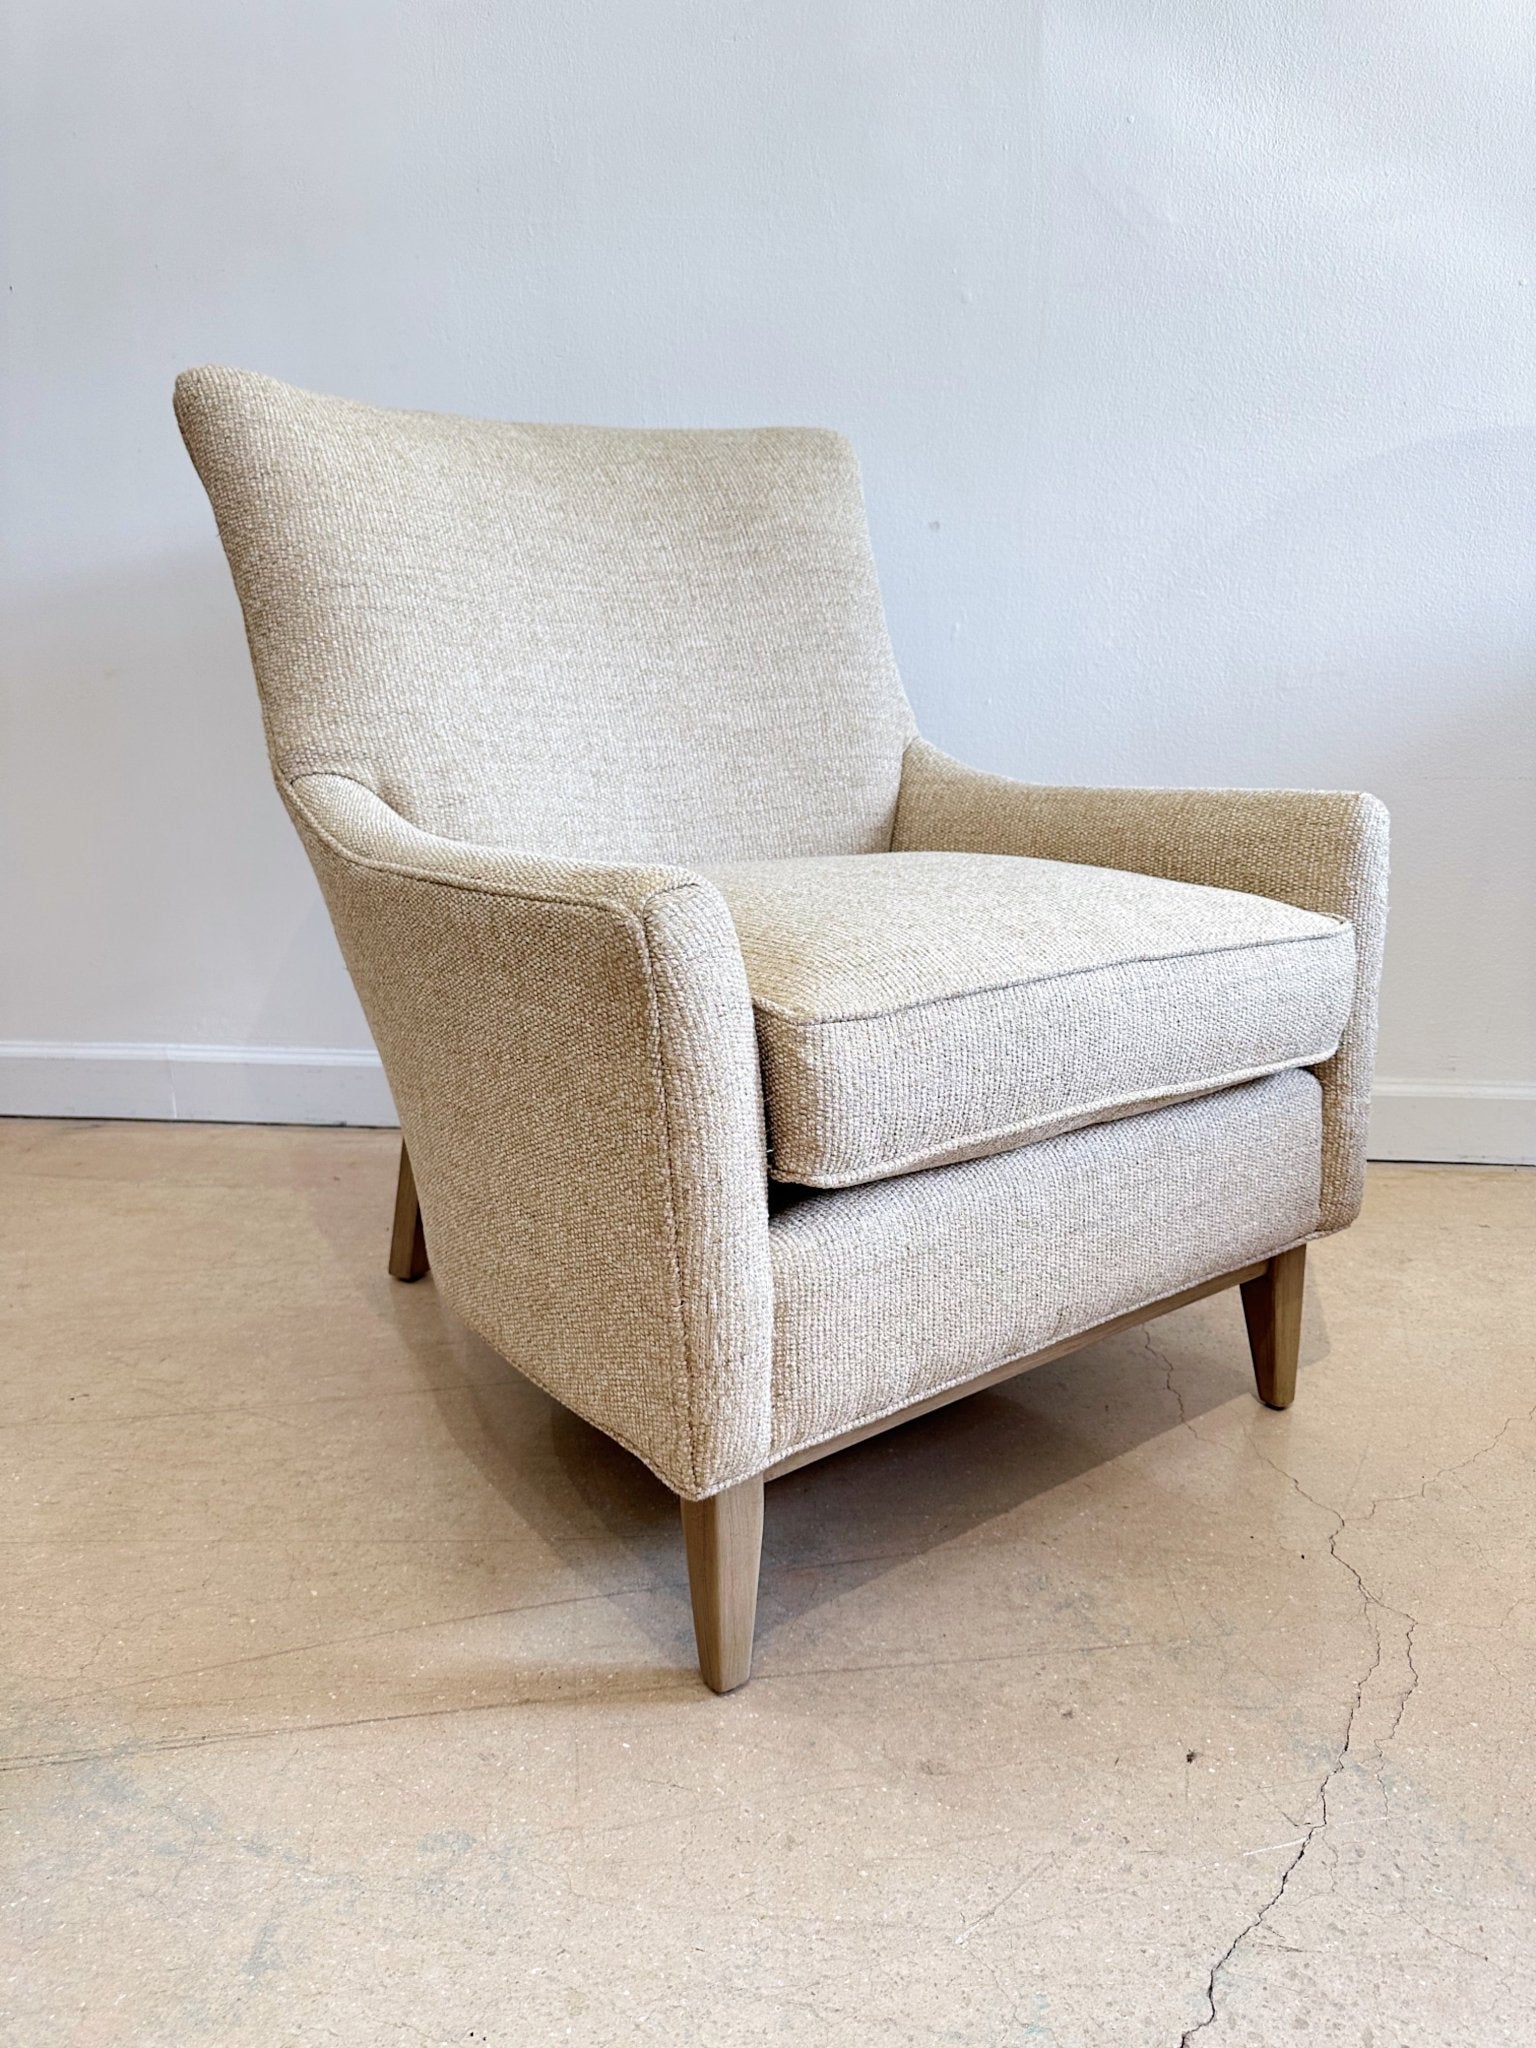 Bingham Accent Chair, by Arhaus - Rehaus